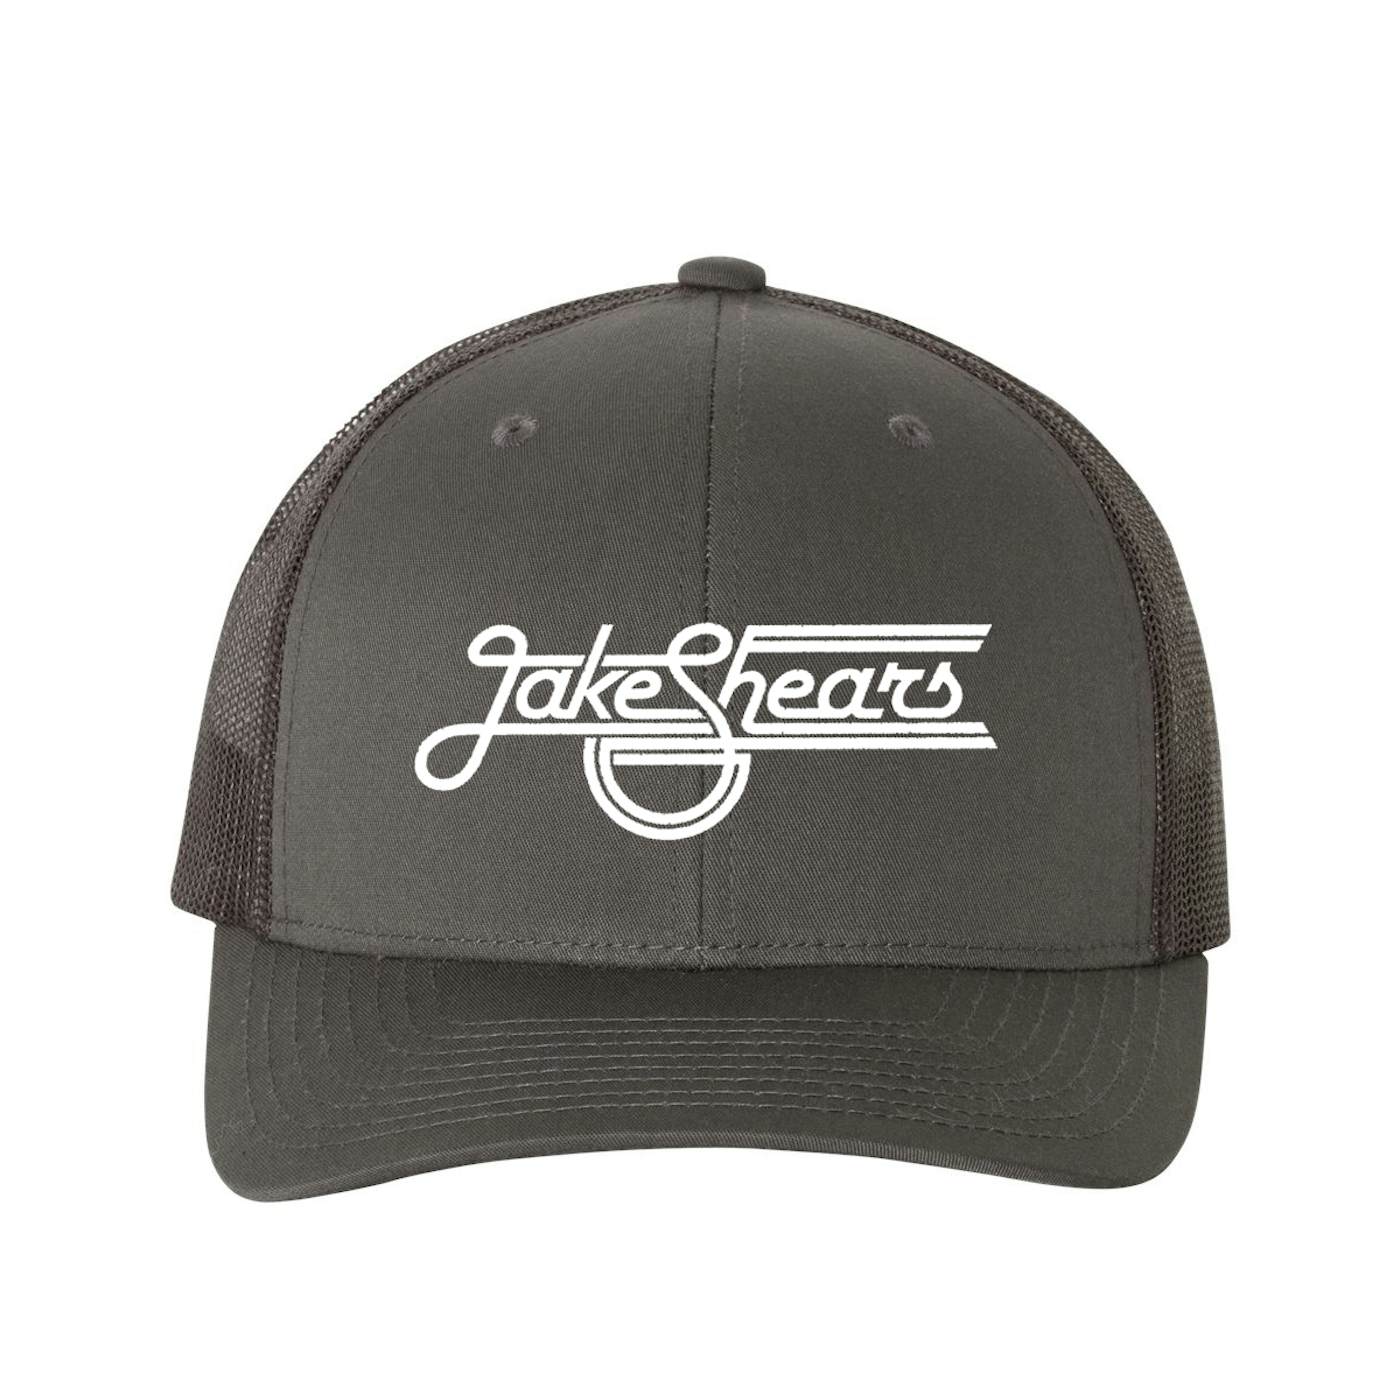 Jake Shears Trucker Hat